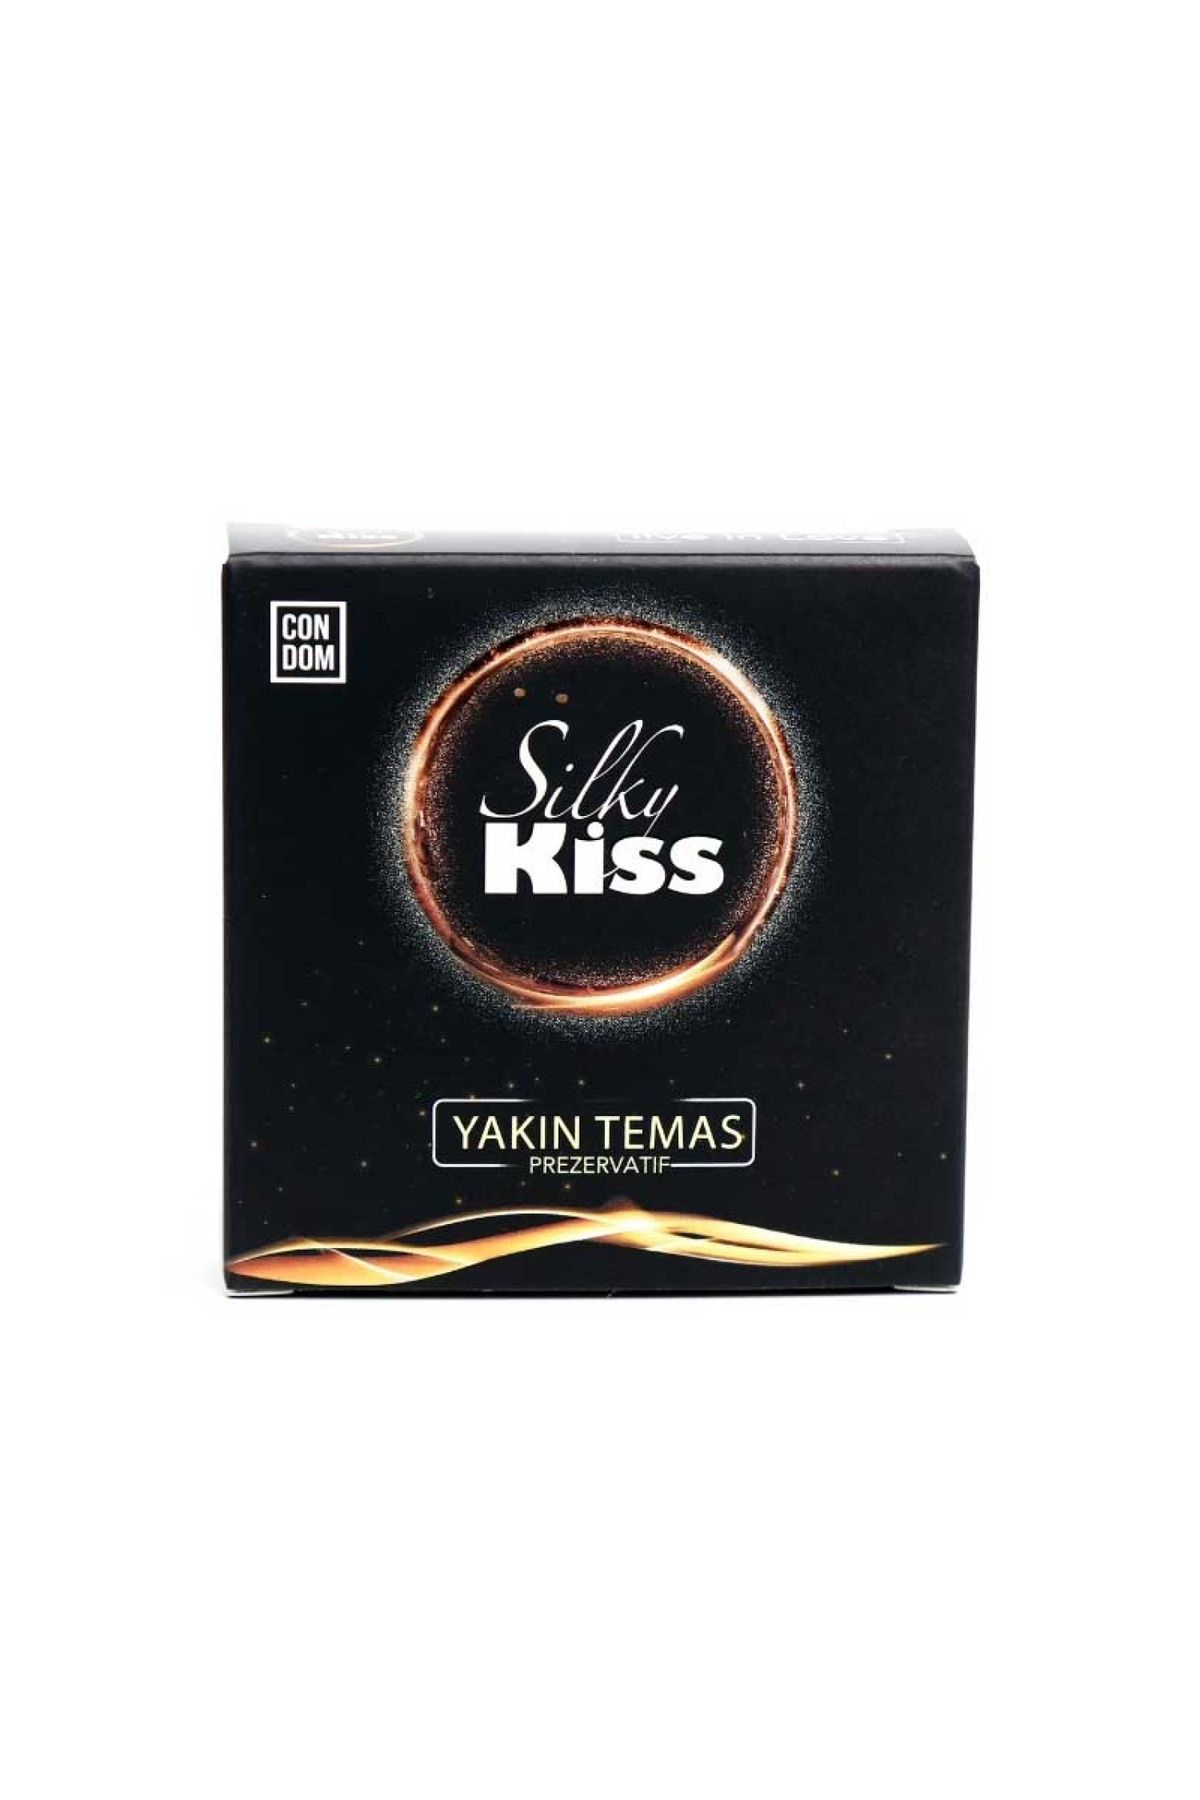 Silky Kiss Yakın Temas Ekstra Ince Prezervatif 4'lü